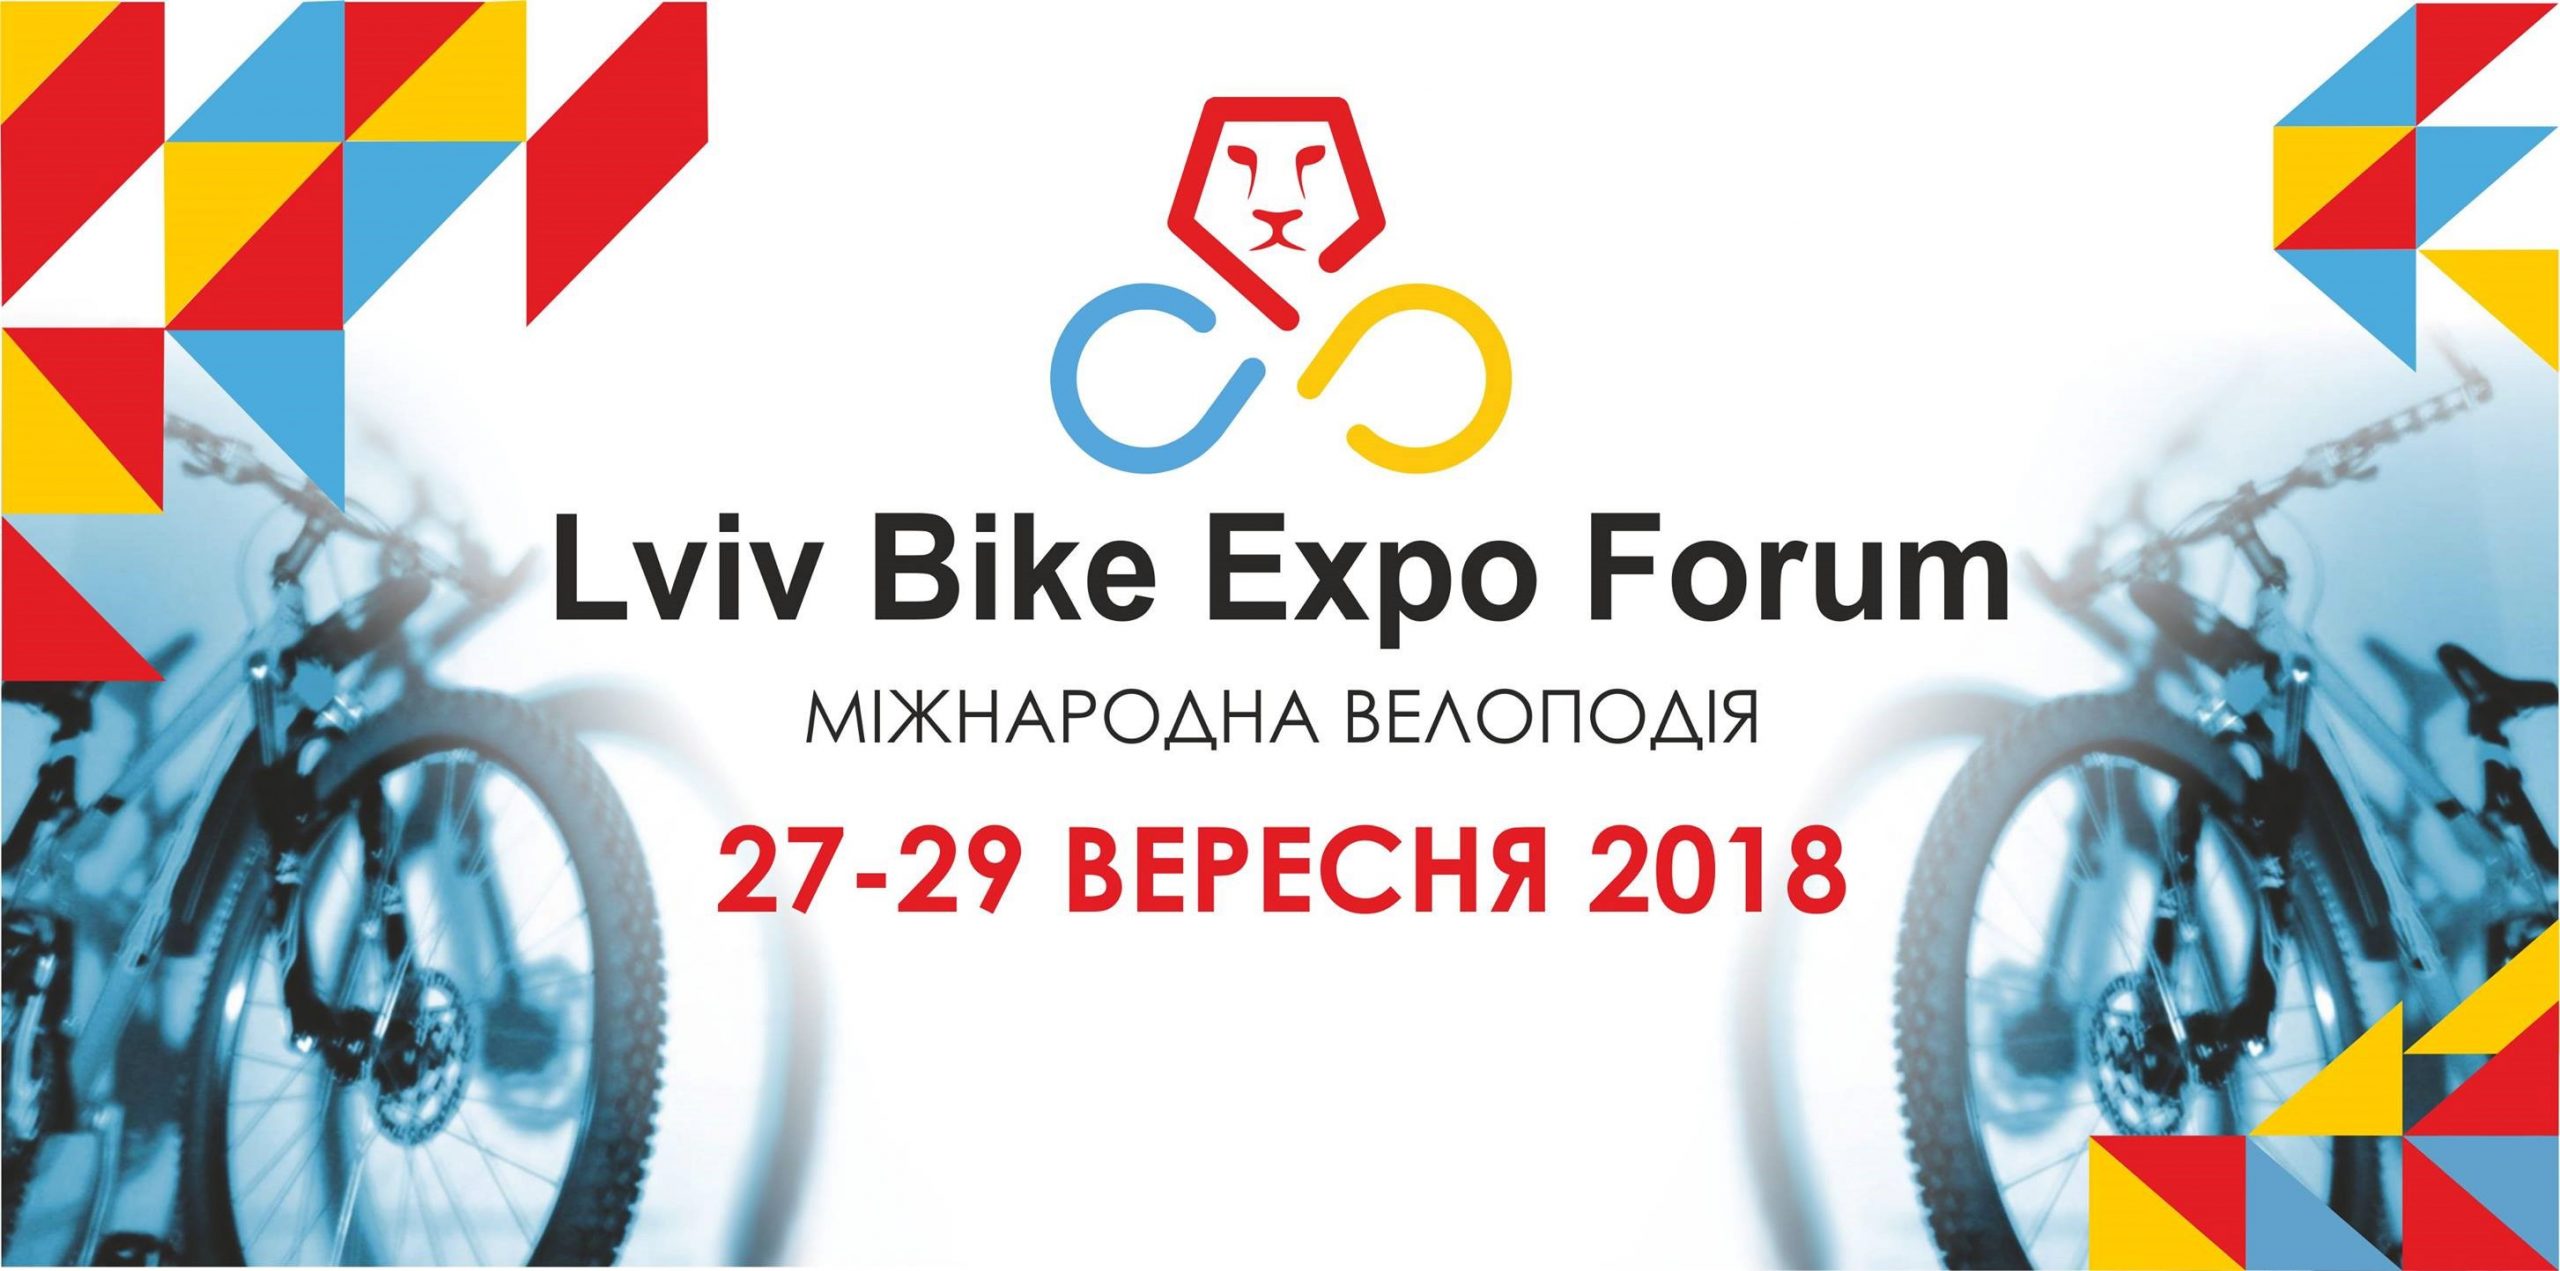 Вперше у Львові відбудеться міжнародна веловиставка